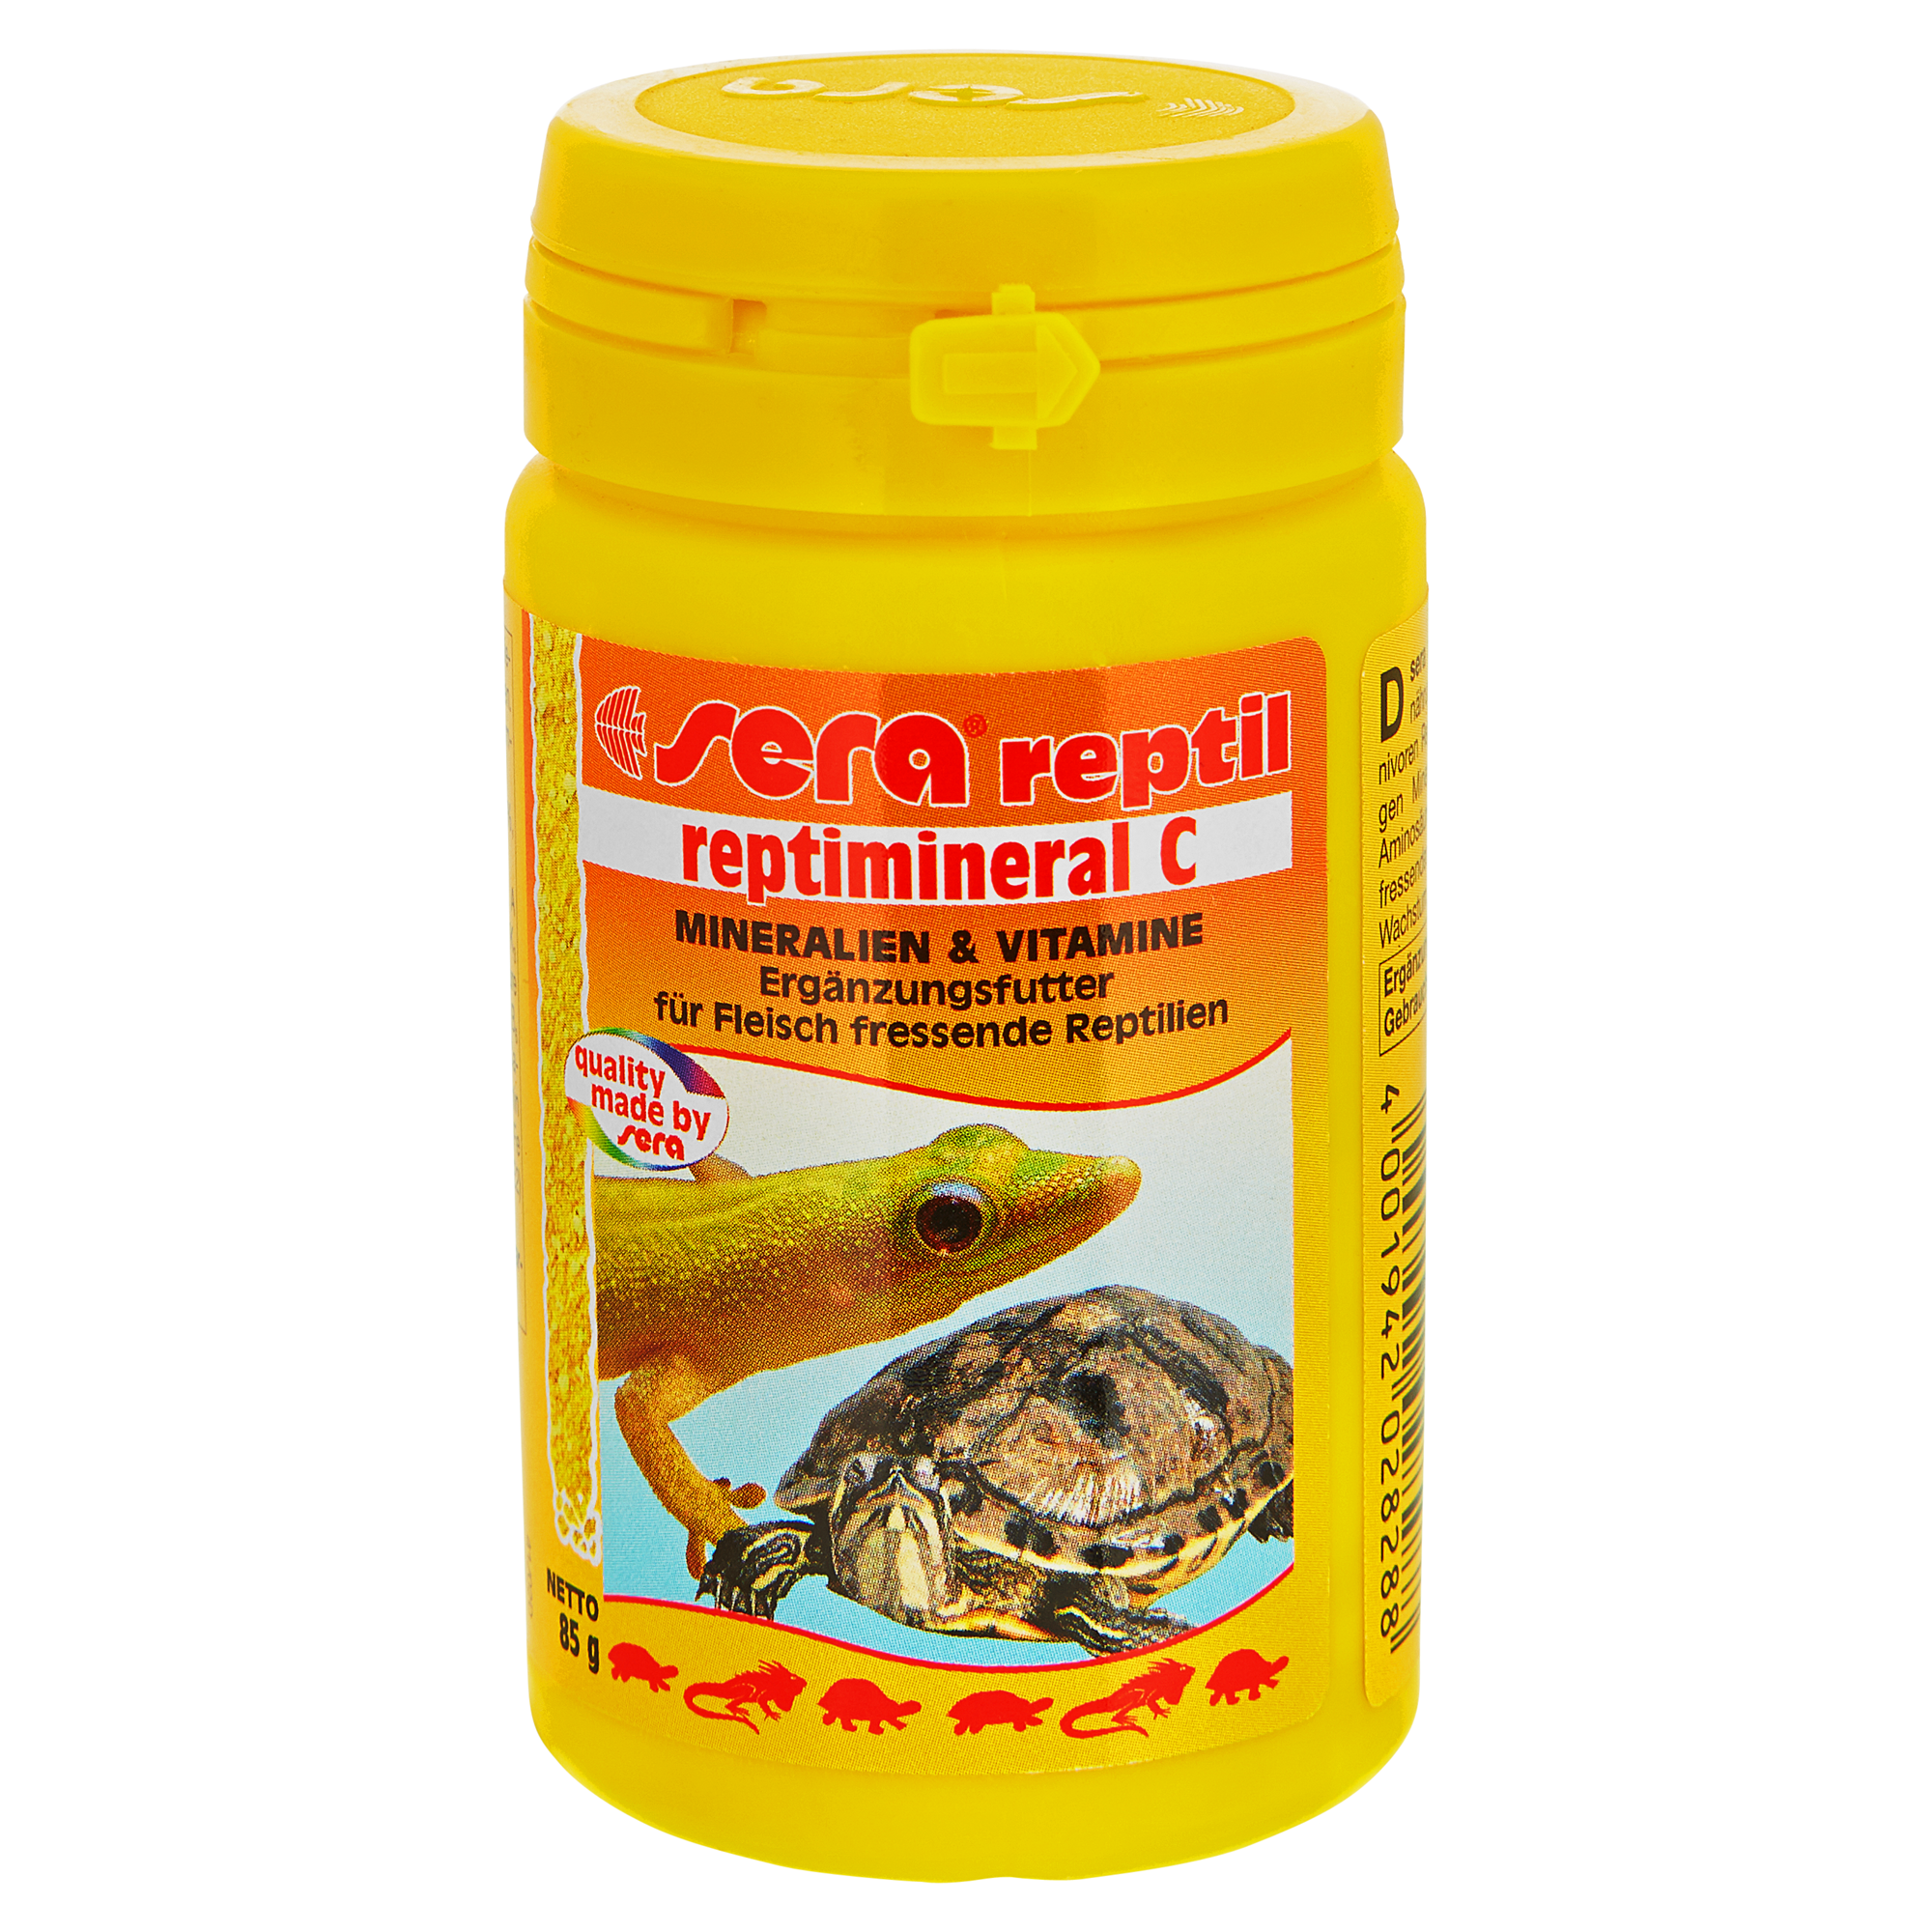 Reptimineral für pflanzenfressende Reptilien C 100 ml + product picture